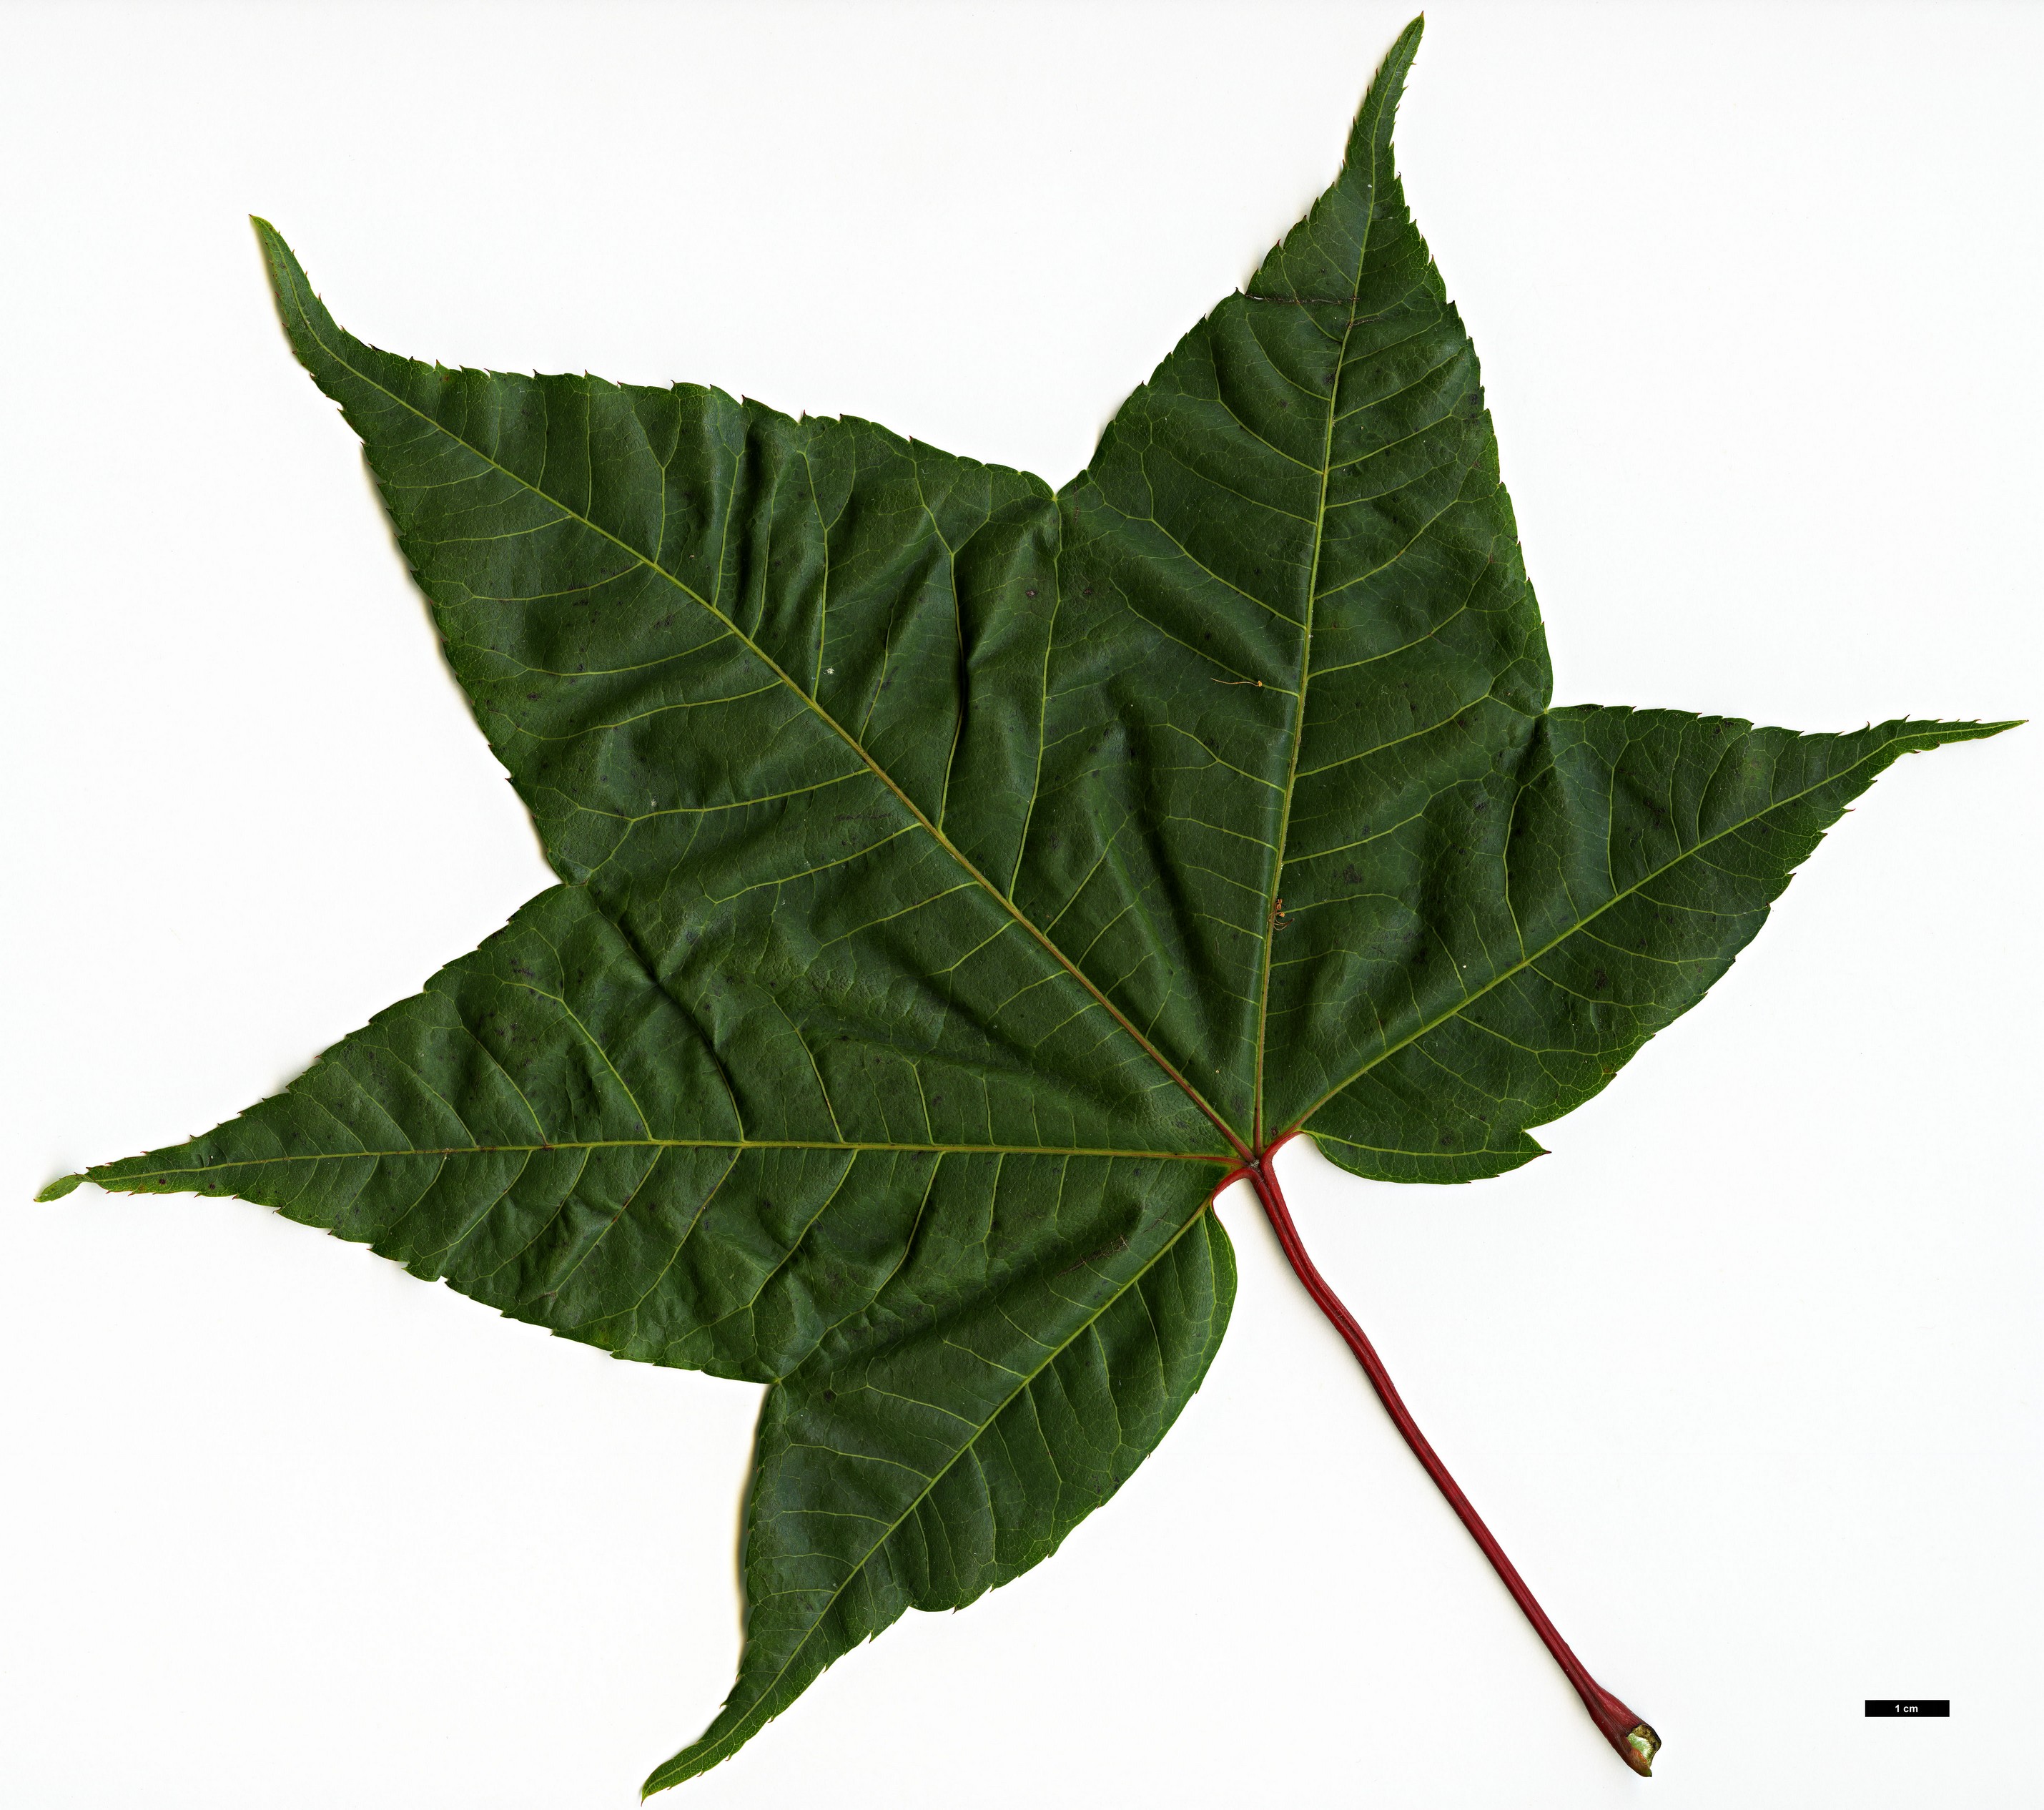 High resolution image: Family: Sapindaceae - Genus: Acer - Taxon: campbellii - SpeciesSub: subsp. flabellatum